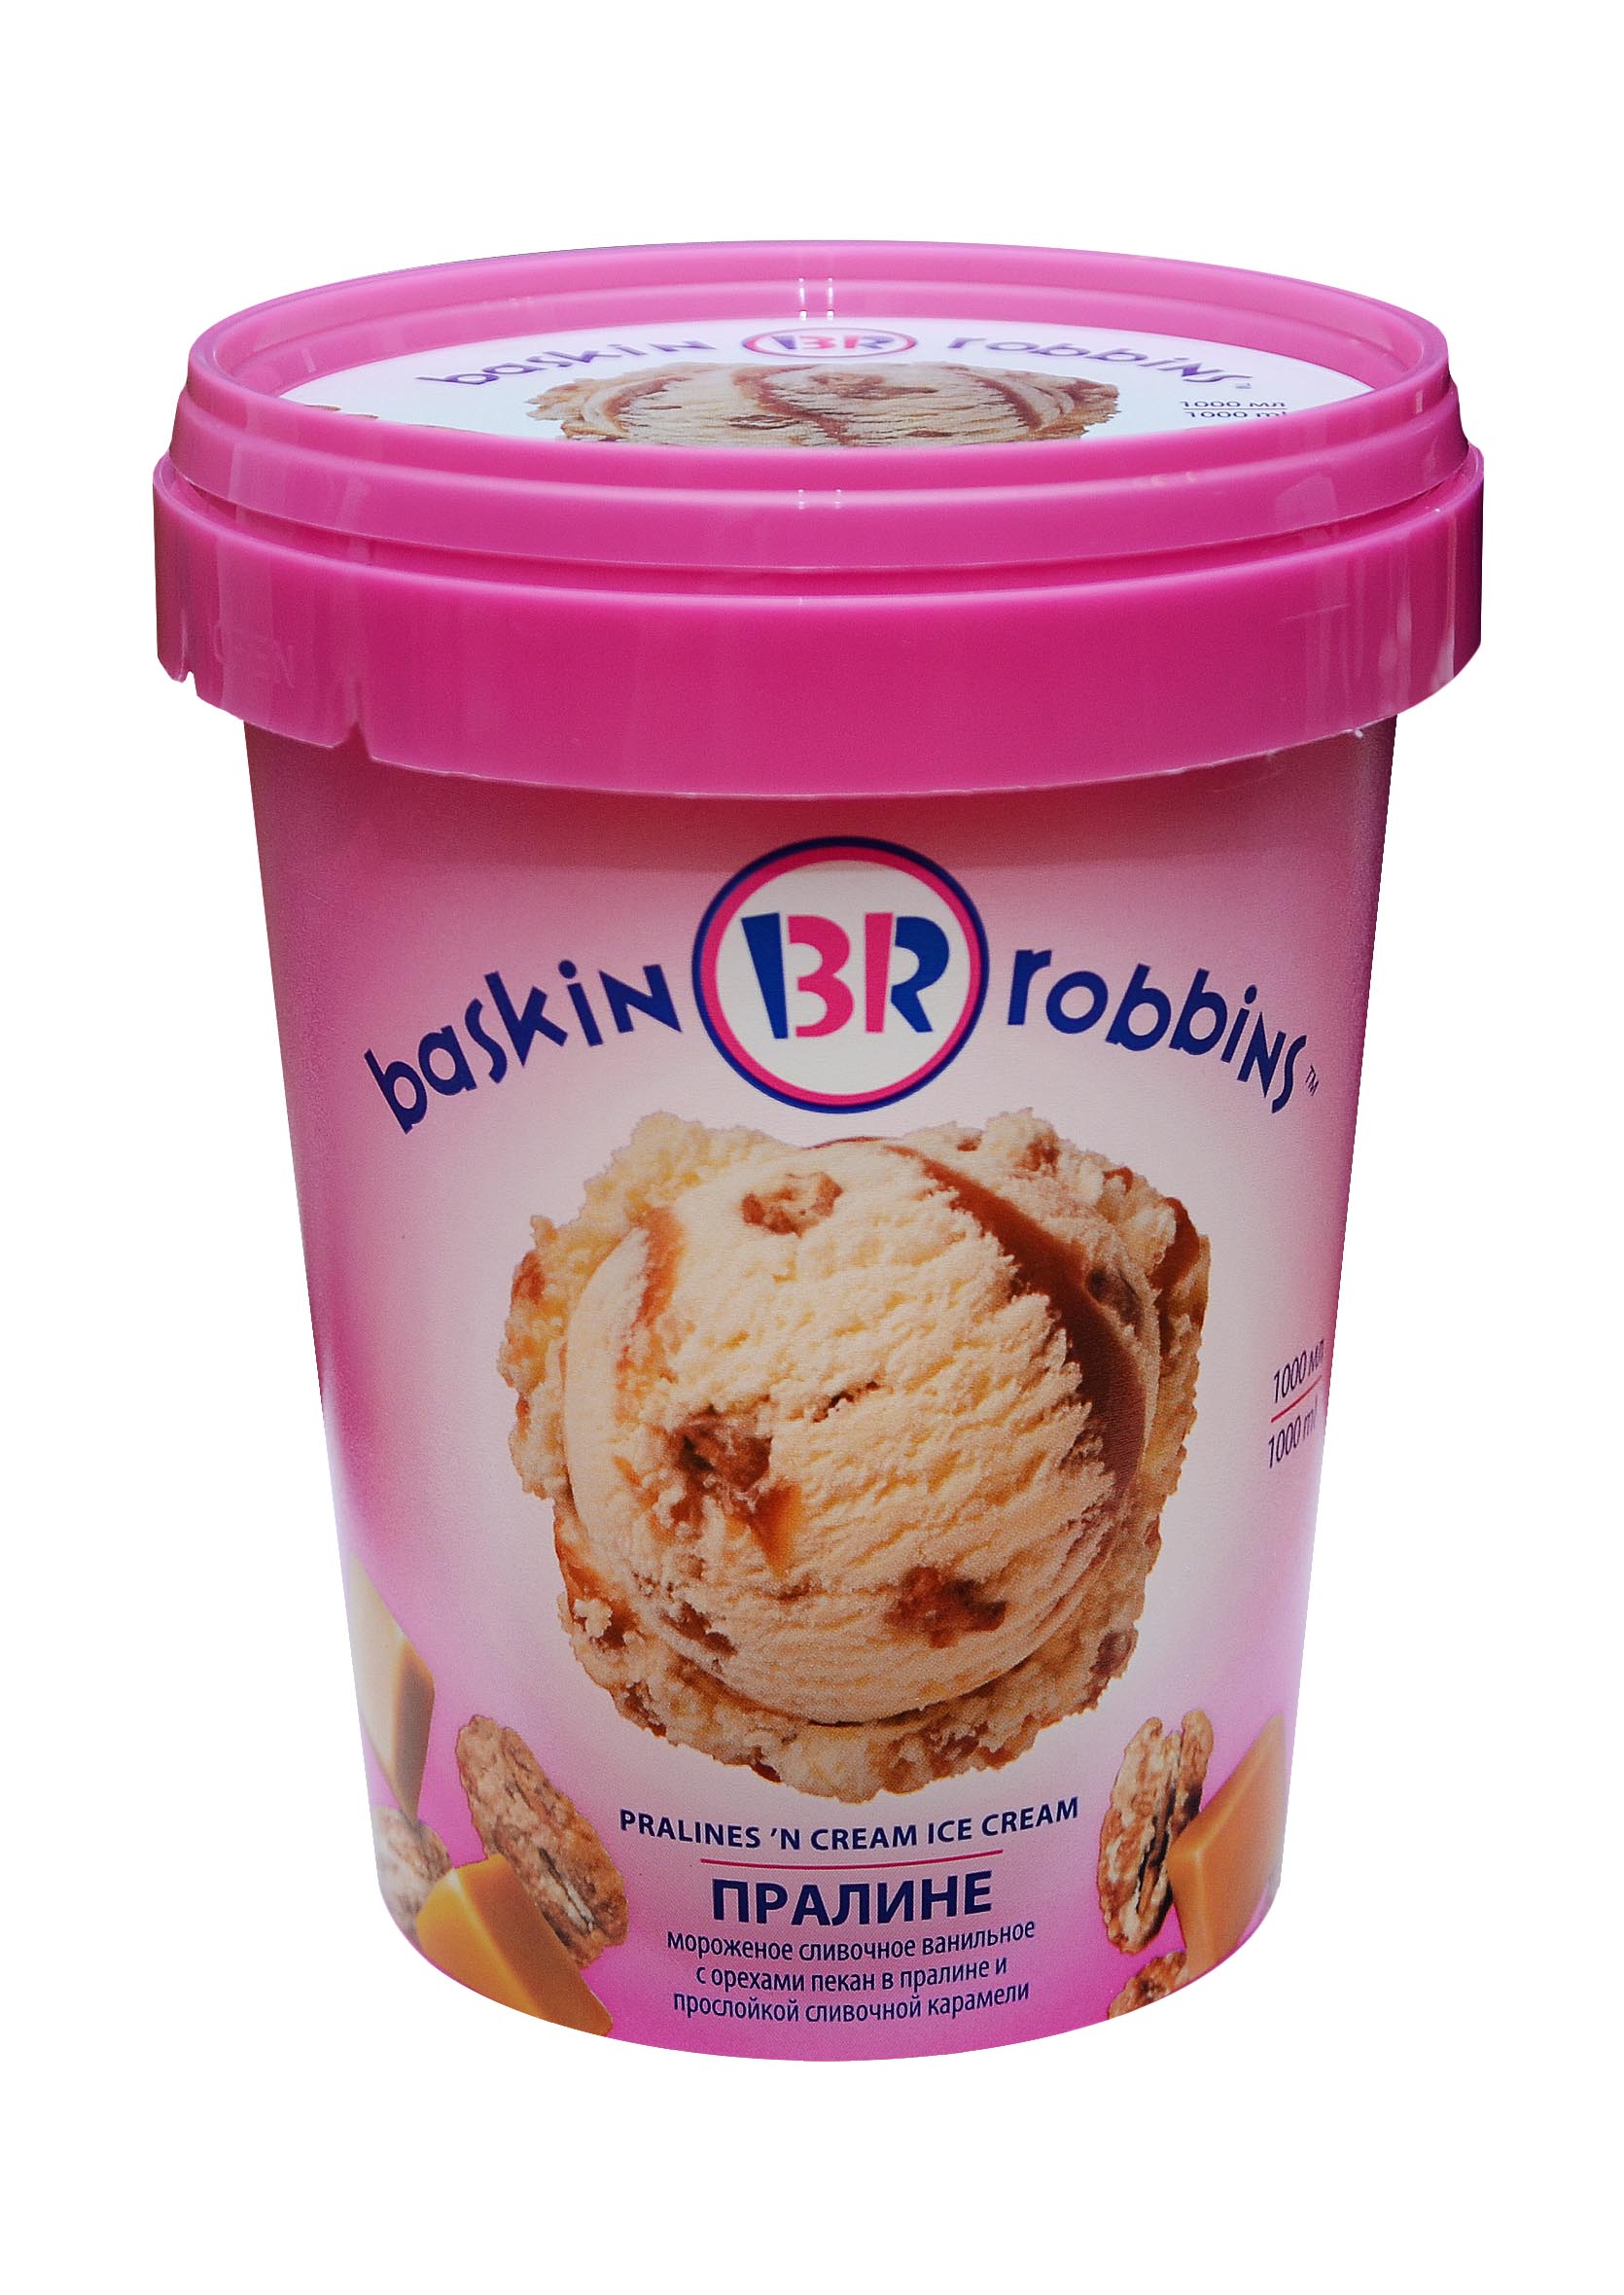 Королевская вишня Баскин Роббинс мороженое